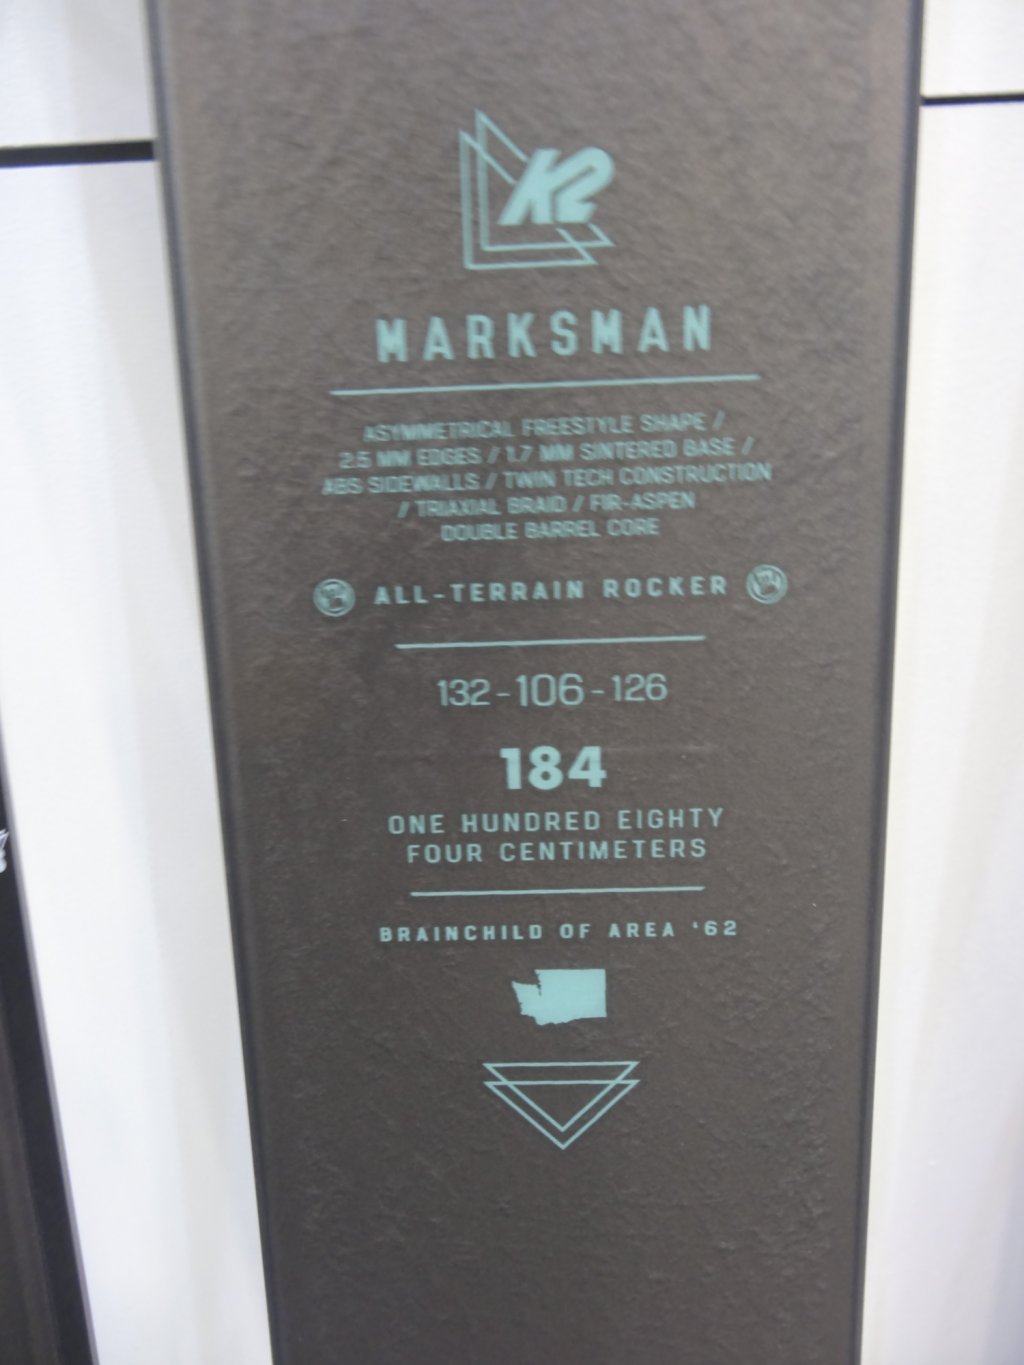 K2 Marksman